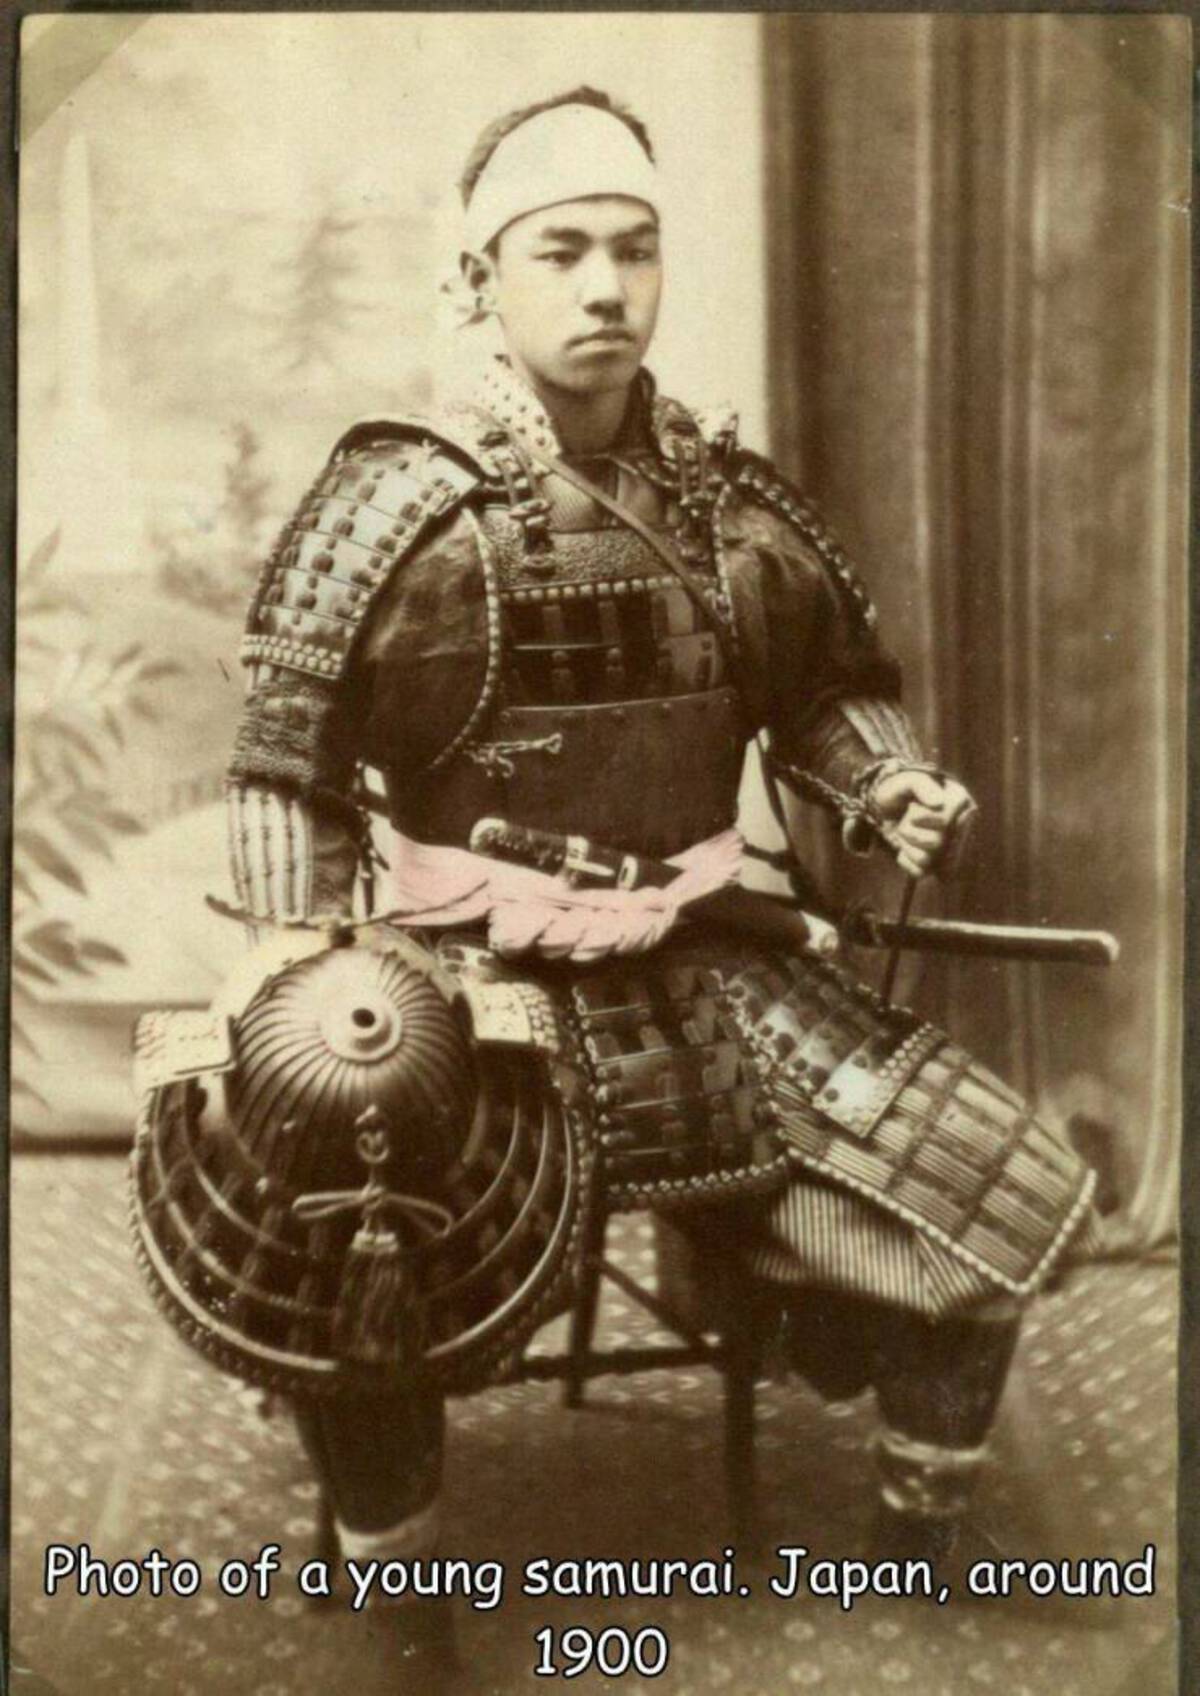 old samurai armour - Photo of a young samurai. Japan, around 1900